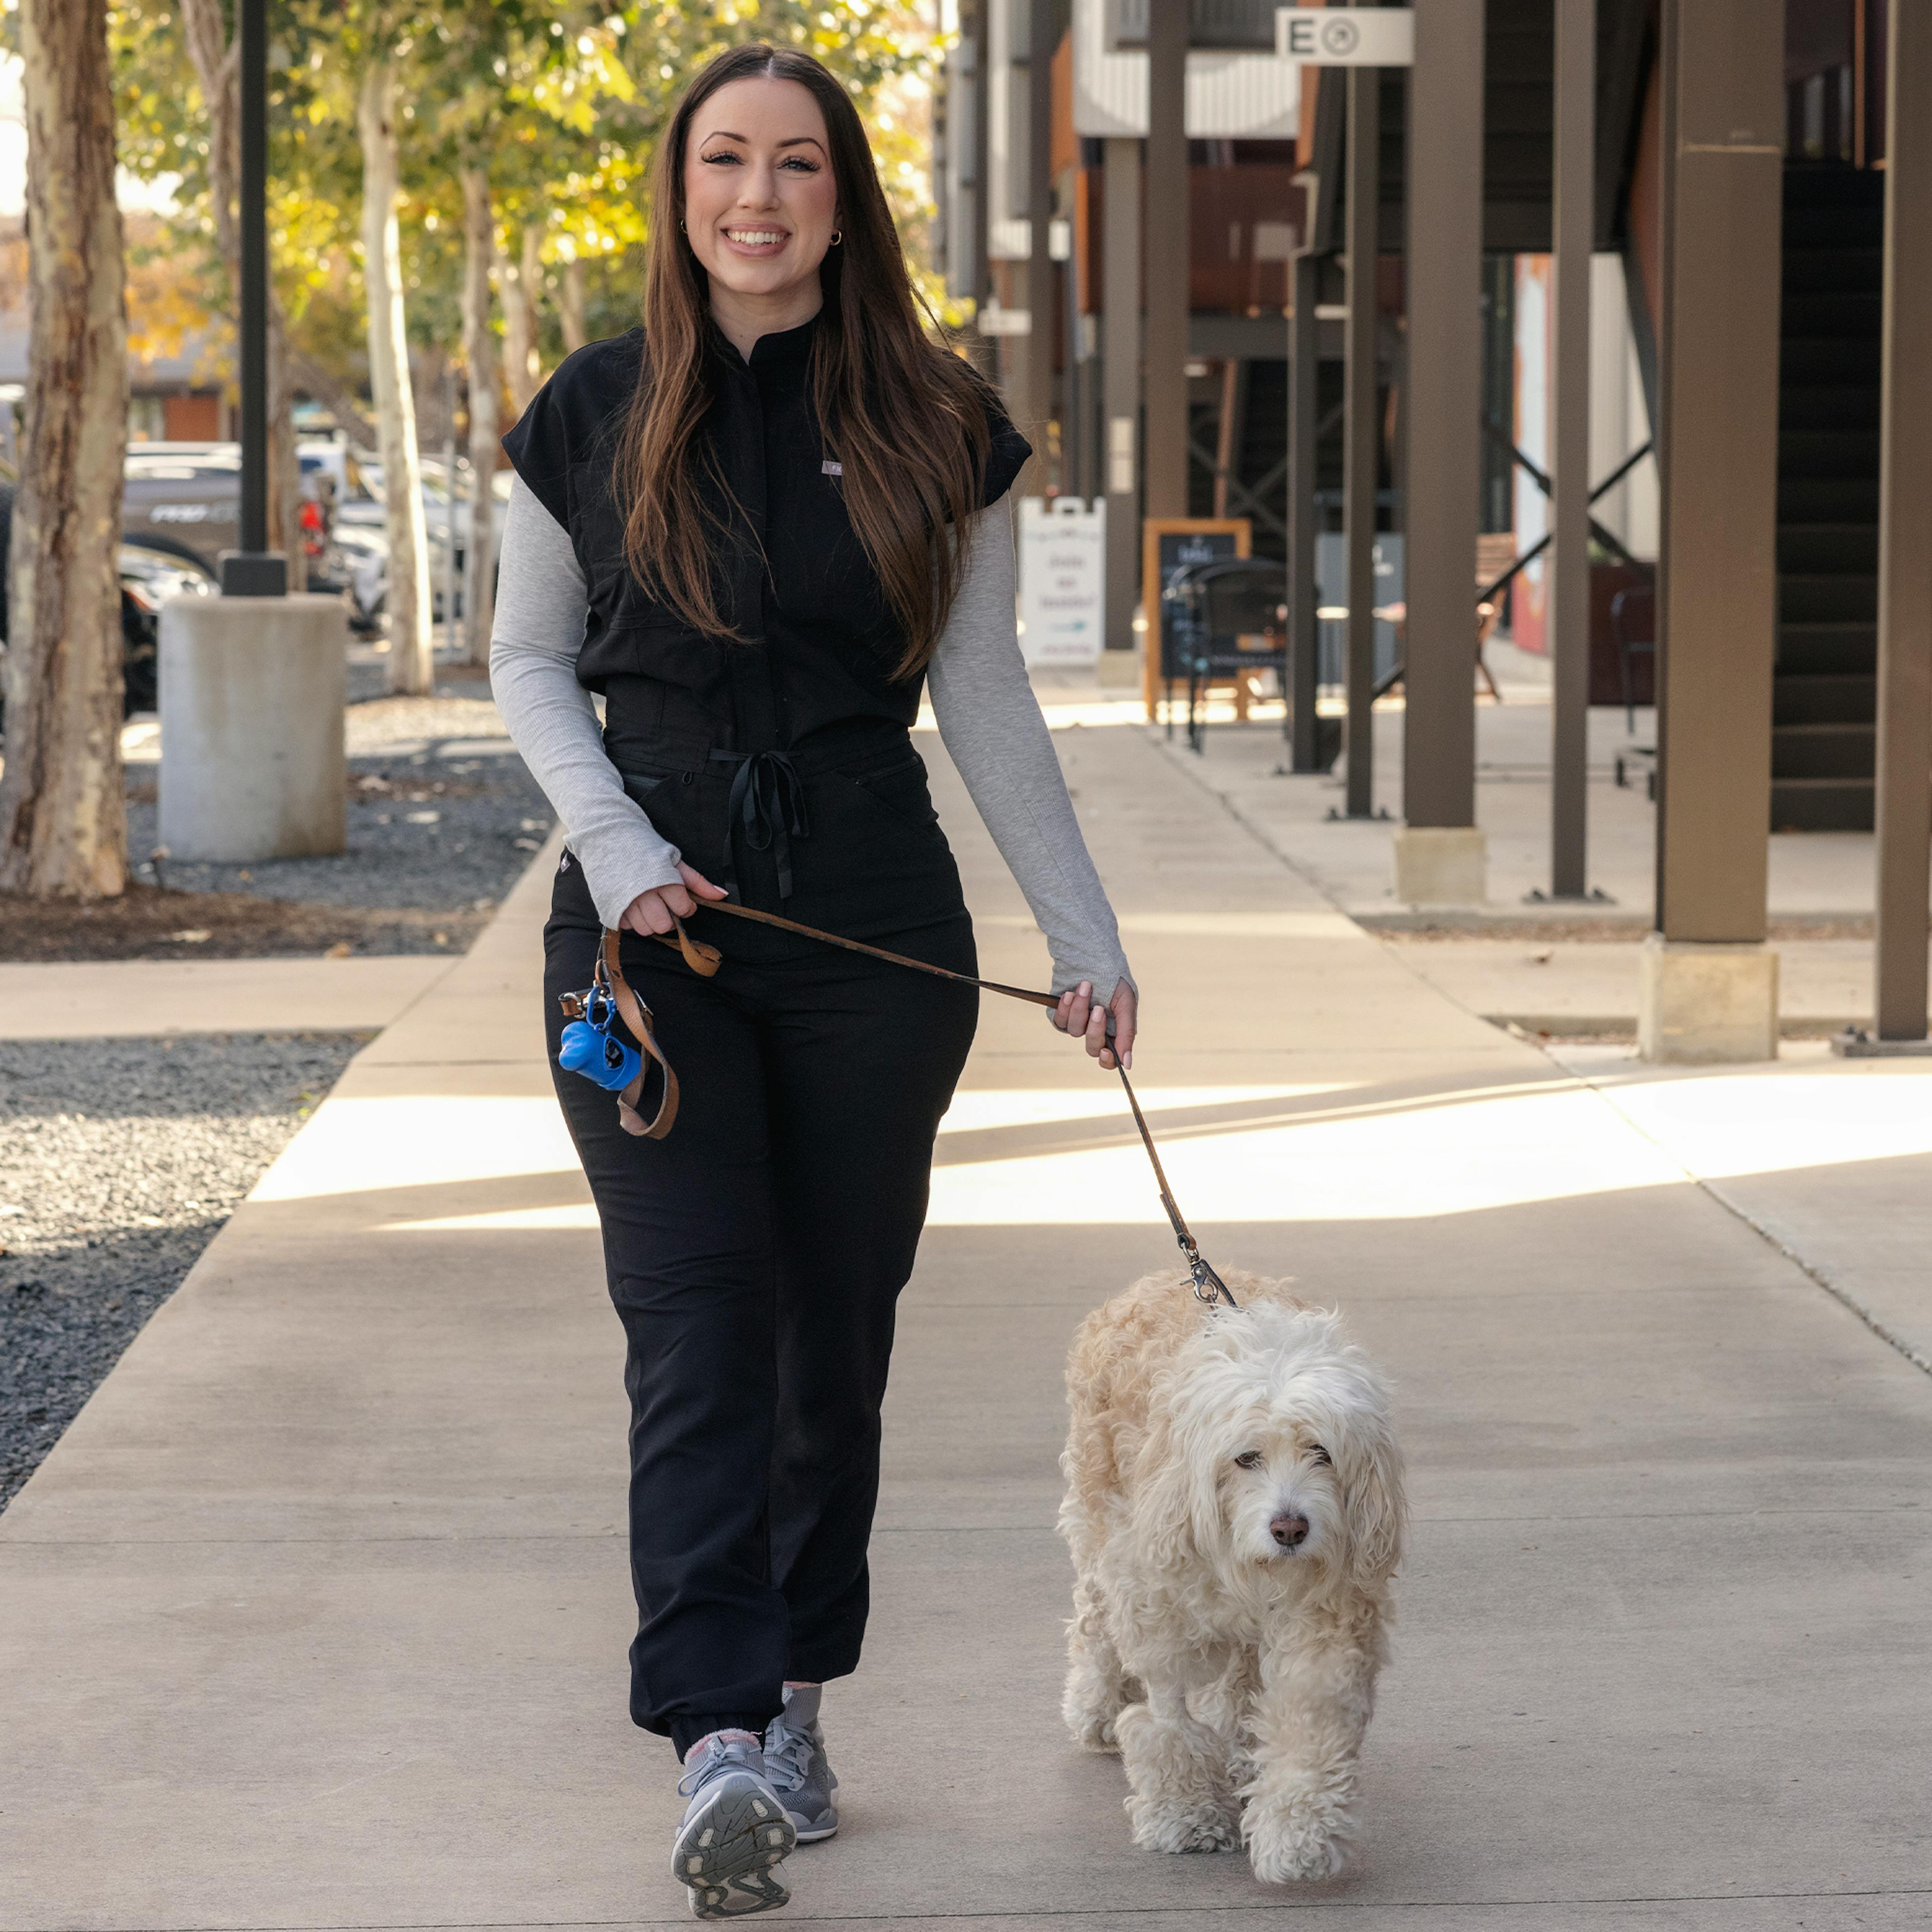 Nurse Kristen walking a dog in her scrubs